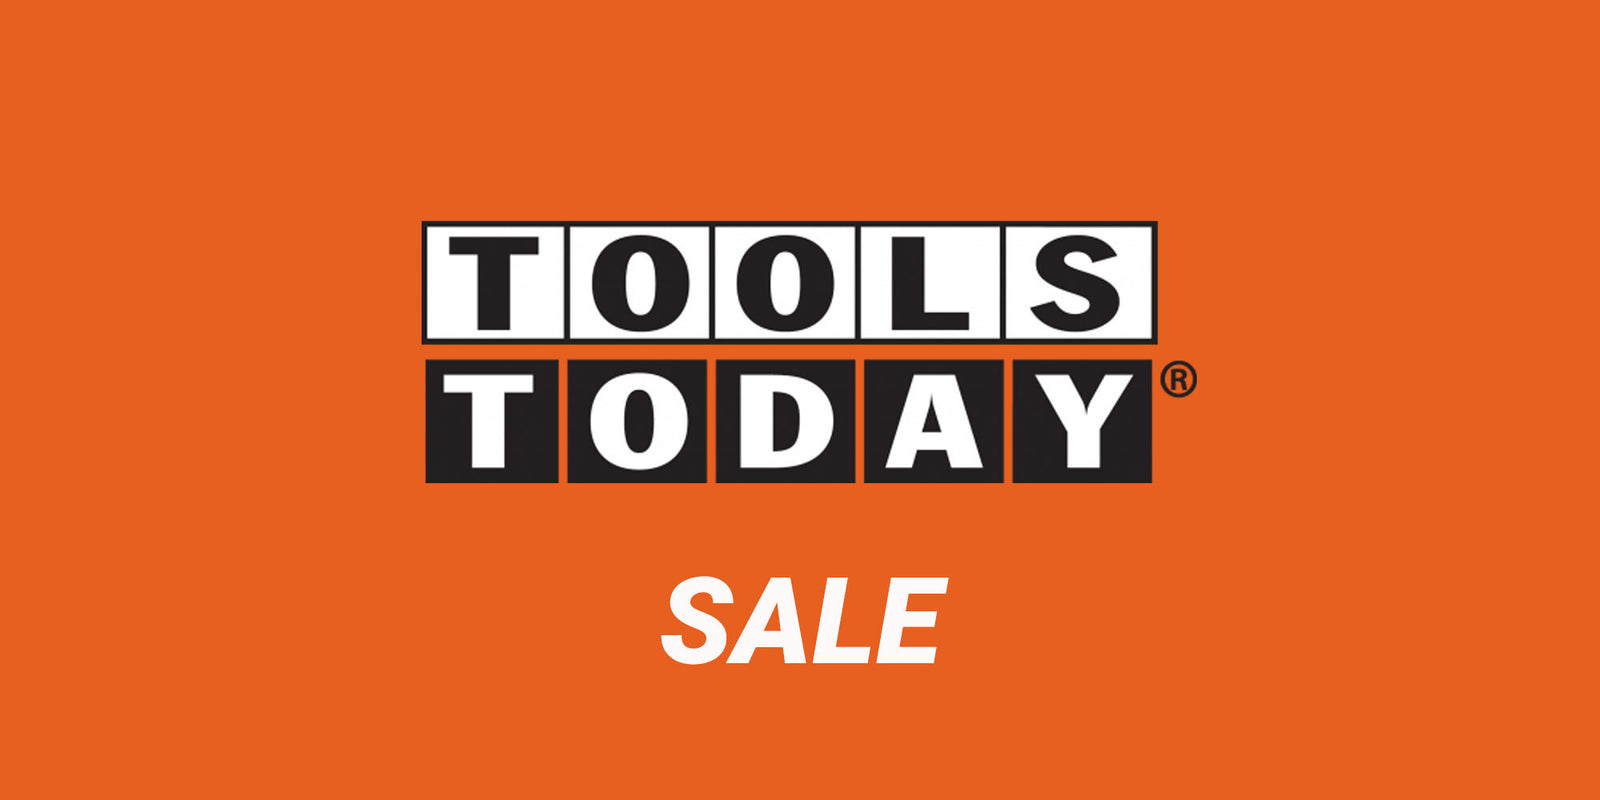 ToolsToday Sales